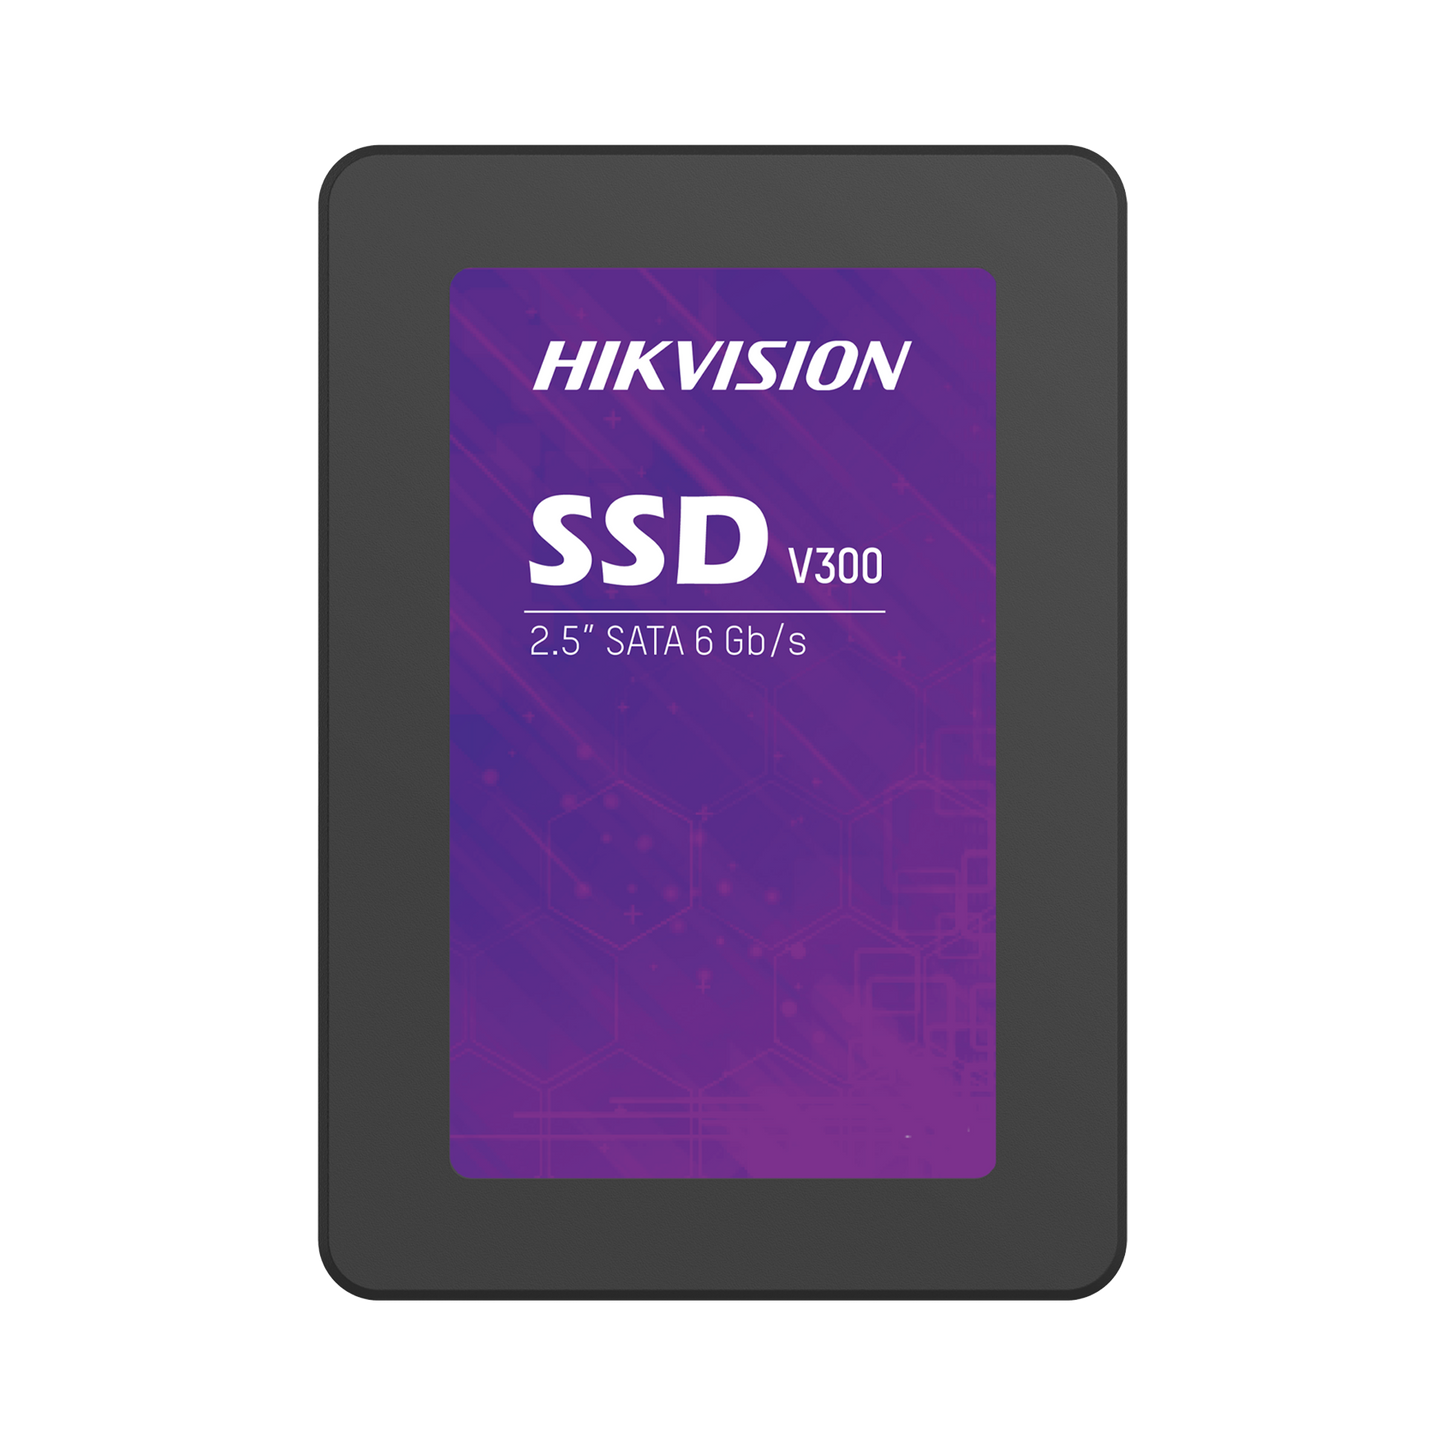 SSD PARA VIDEOVIGILANCIA / Unidad de Estado Solido / 1024 GB / 2.5" / Alto Performance / Uso 24/7 / Base Incluida / Compatible con DVR´s y NVR´s epcom / HiLook y HIKVISION (Seleccionados)